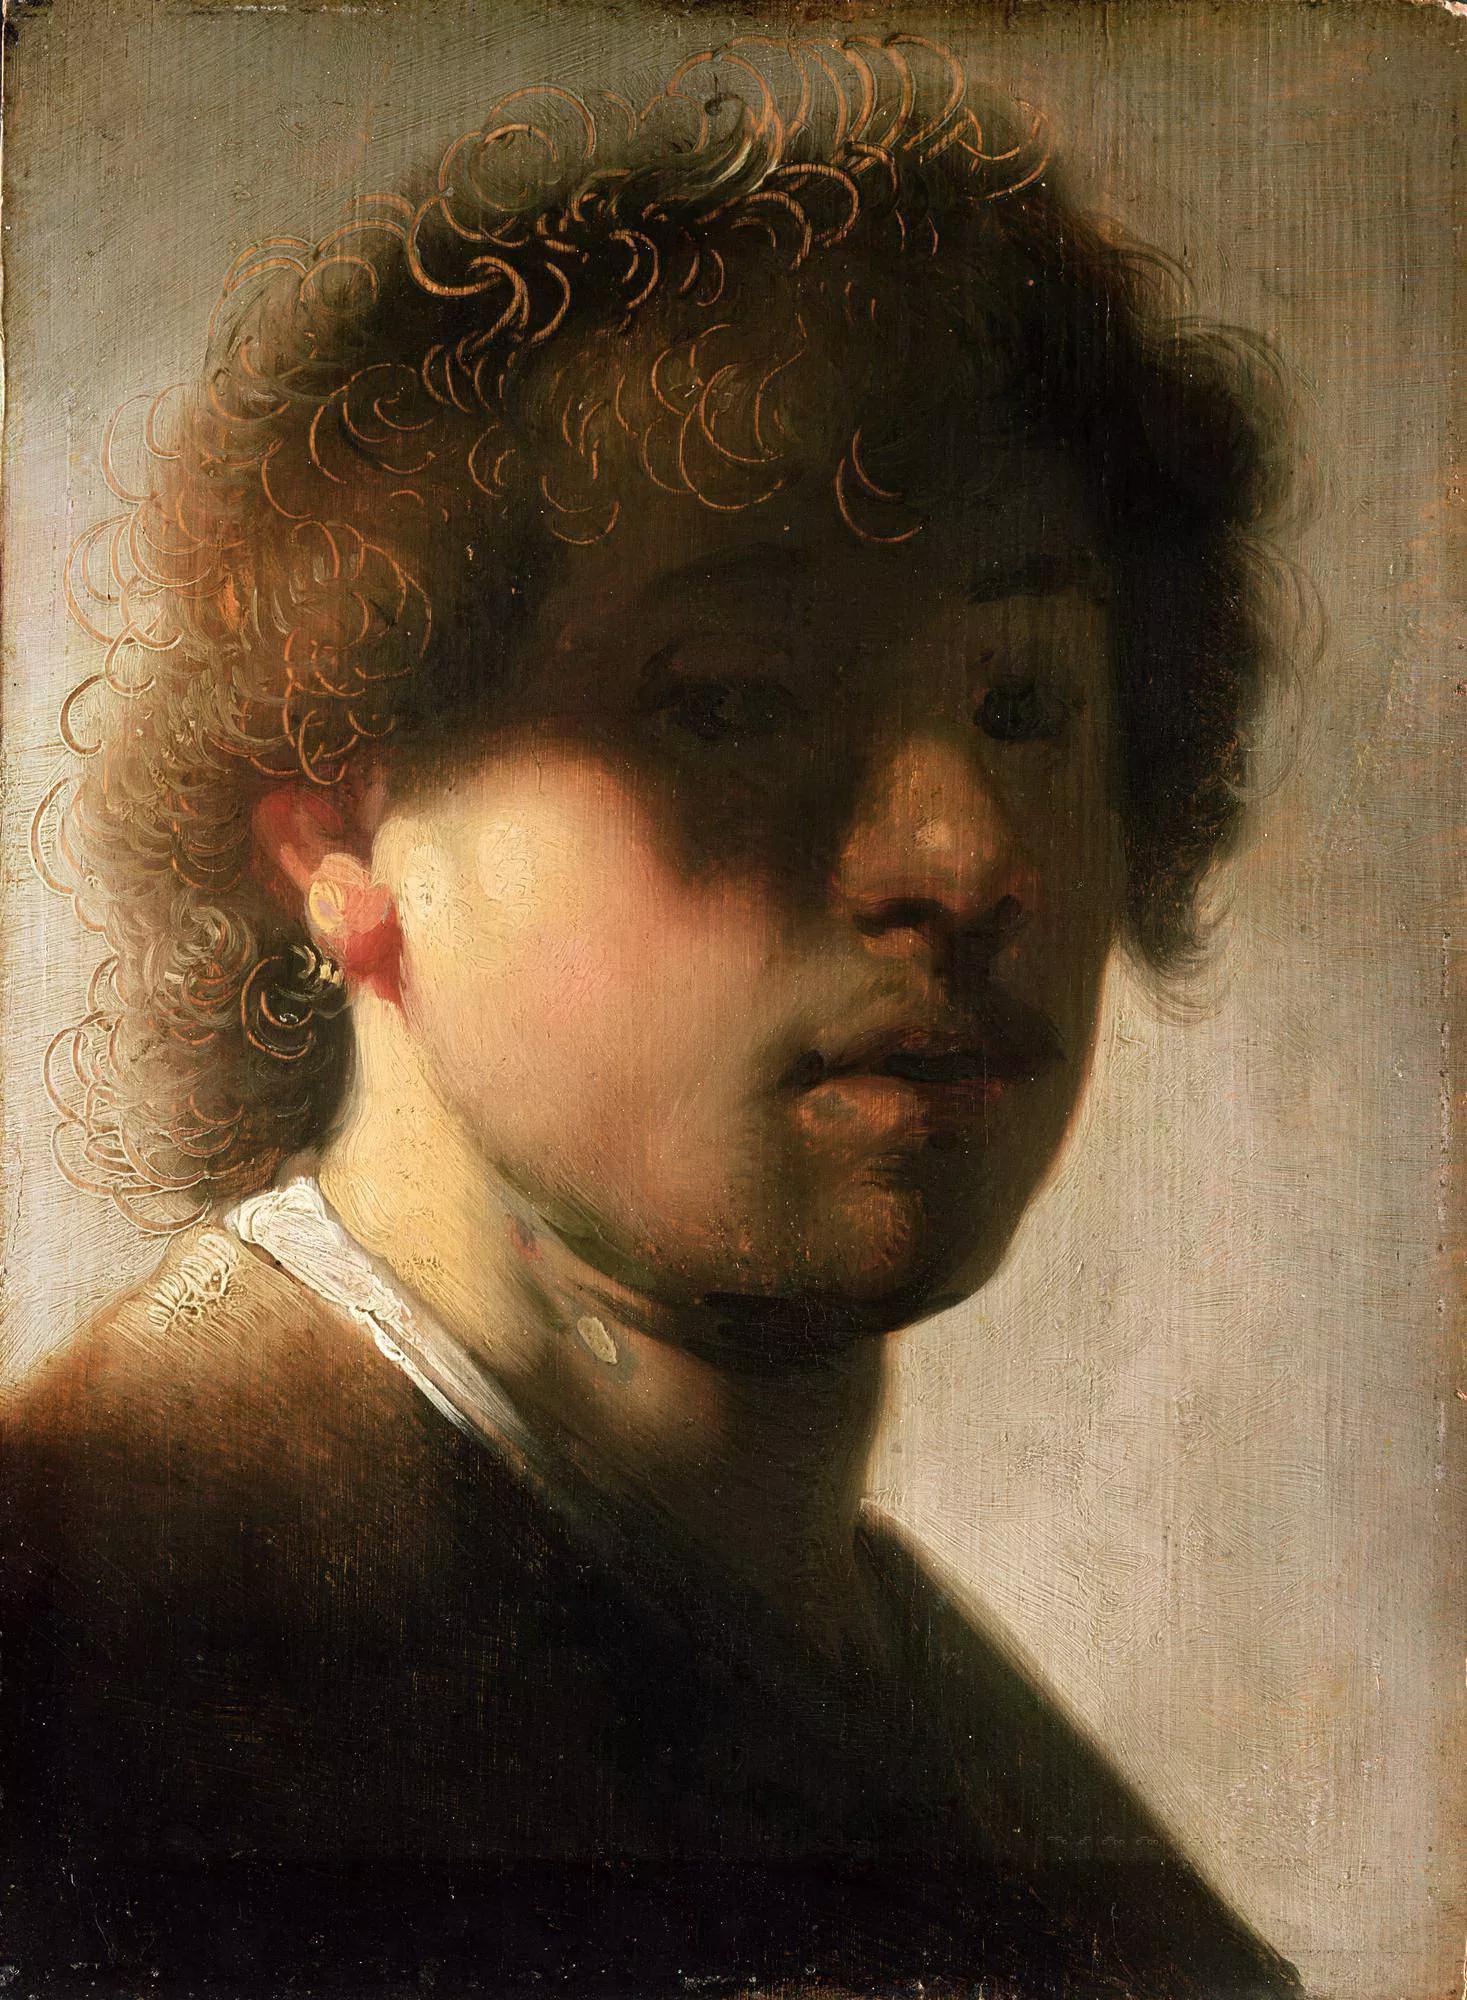 Неизвестный художник, копия автопортрета Рембрандта. Картинная галерея,&nbsp;Кассель